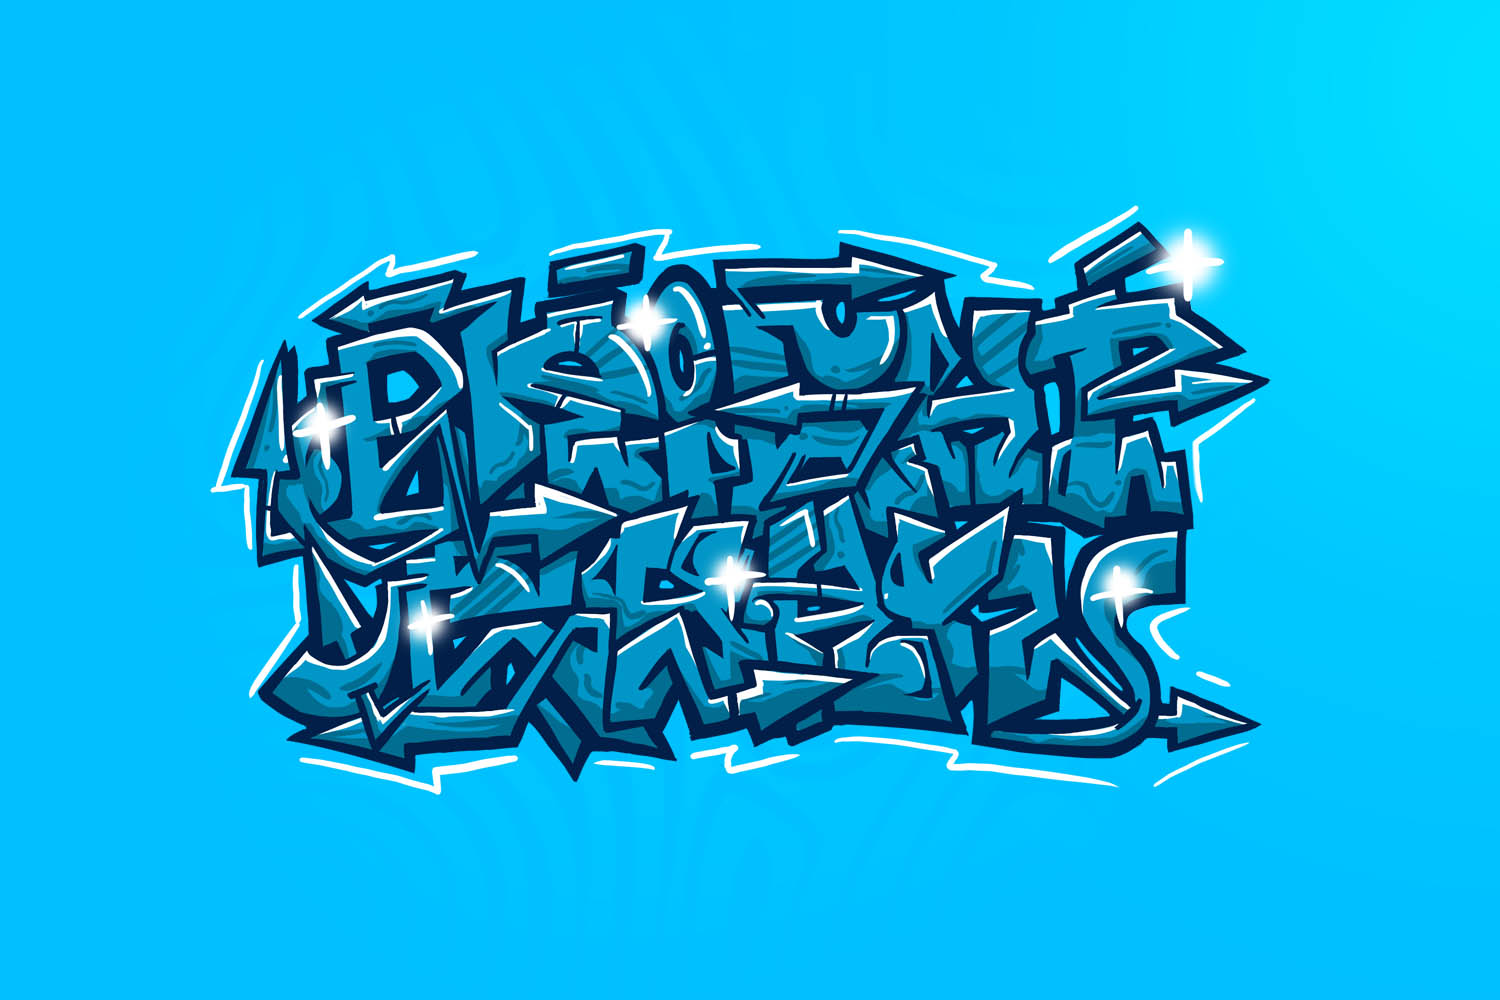 Aple Graffiti Mural Graffiti Alphabet Graffiti Fire By Alan Ket